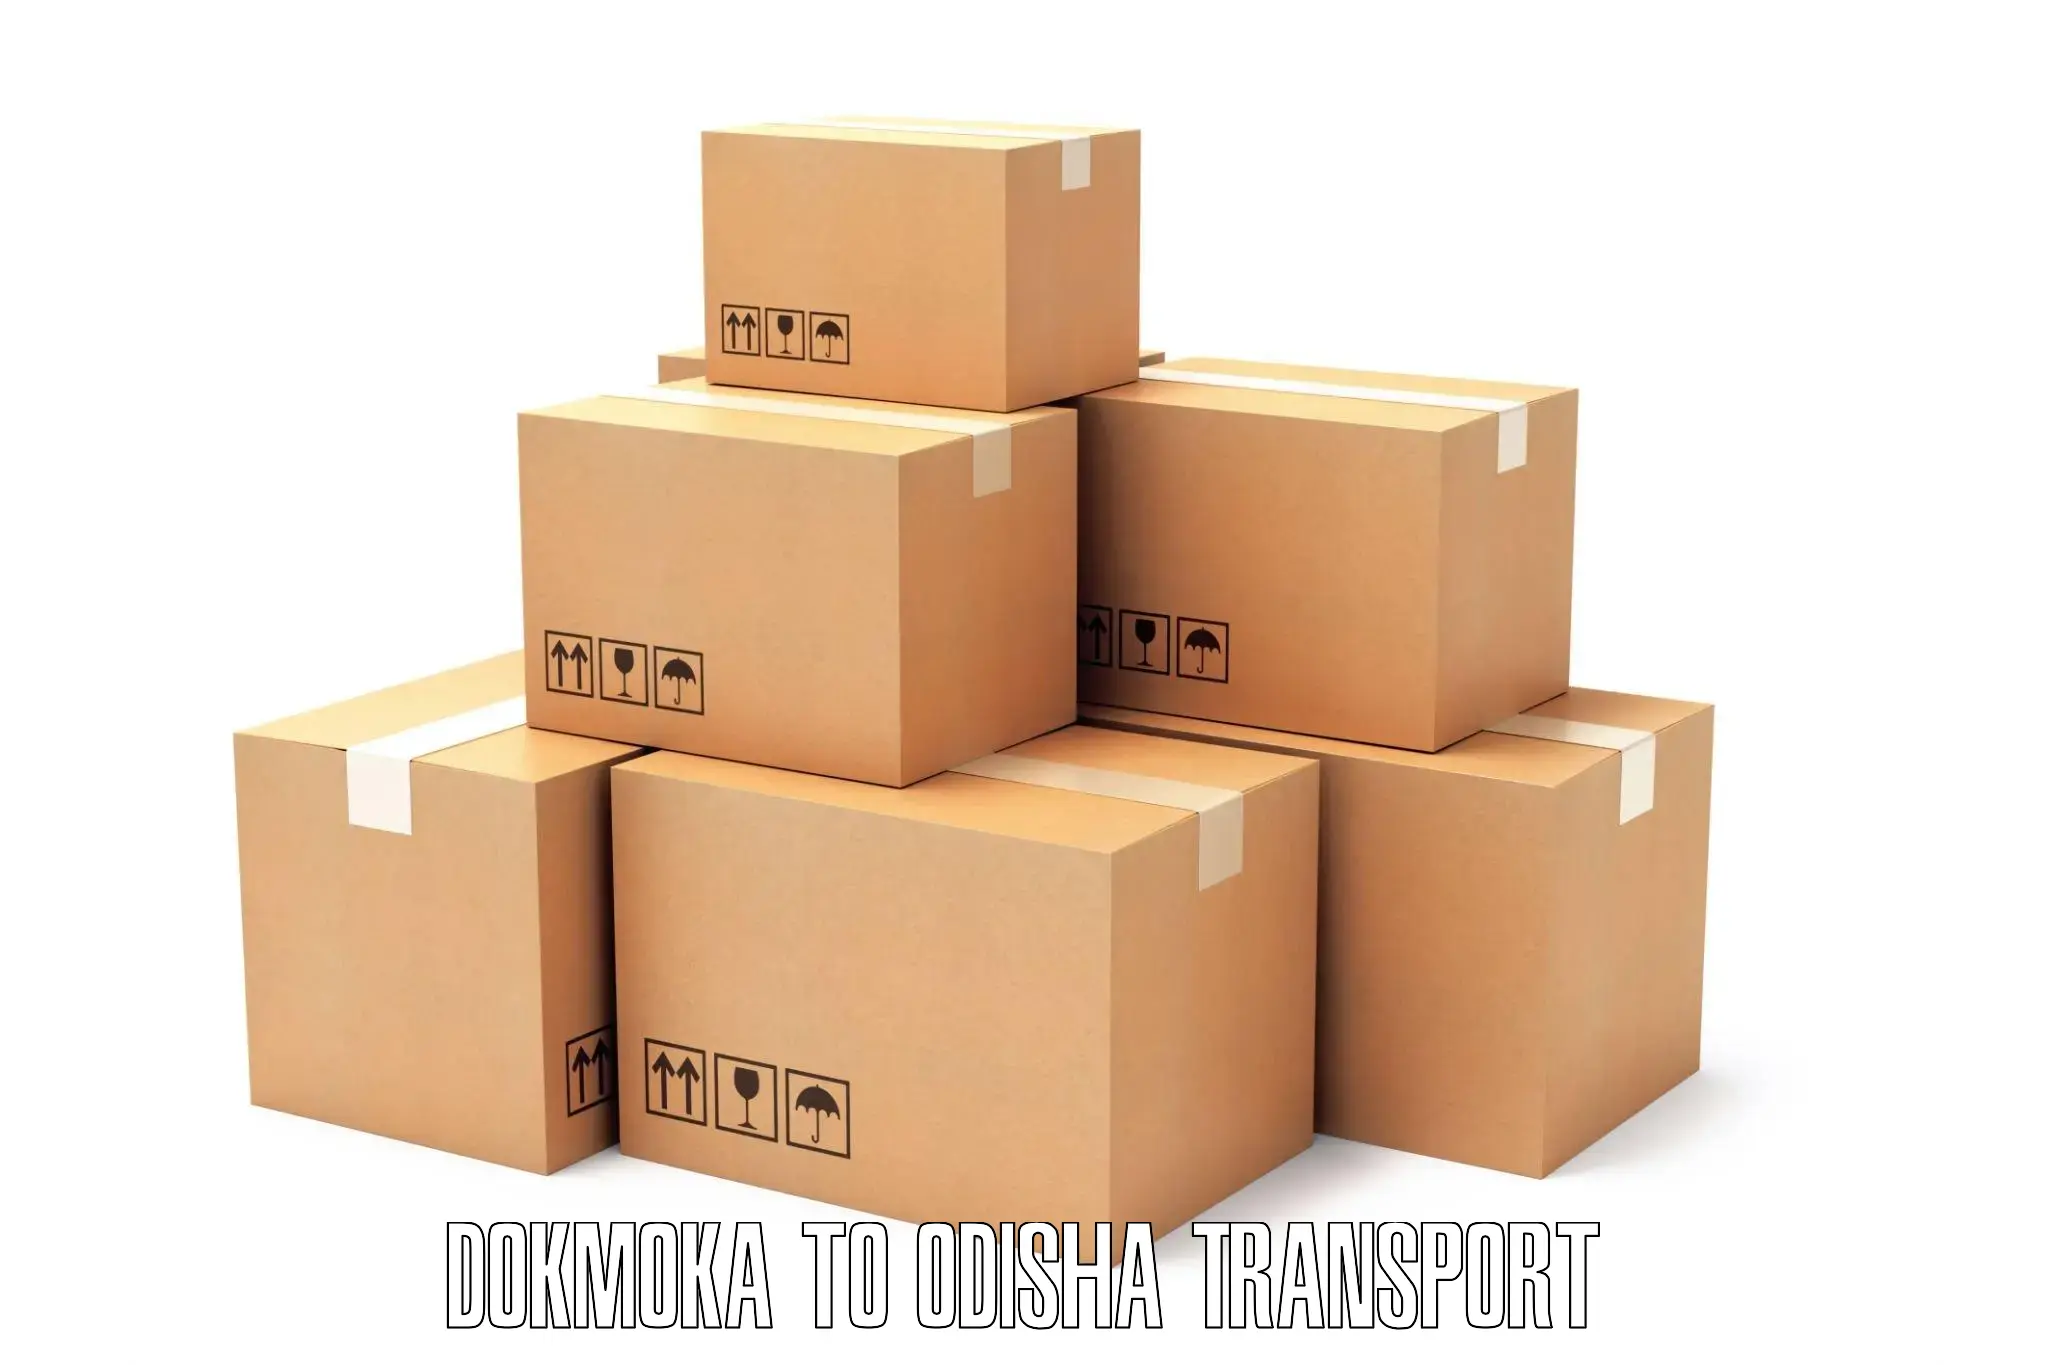 Vehicle parcel service Dokmoka to Balikuda